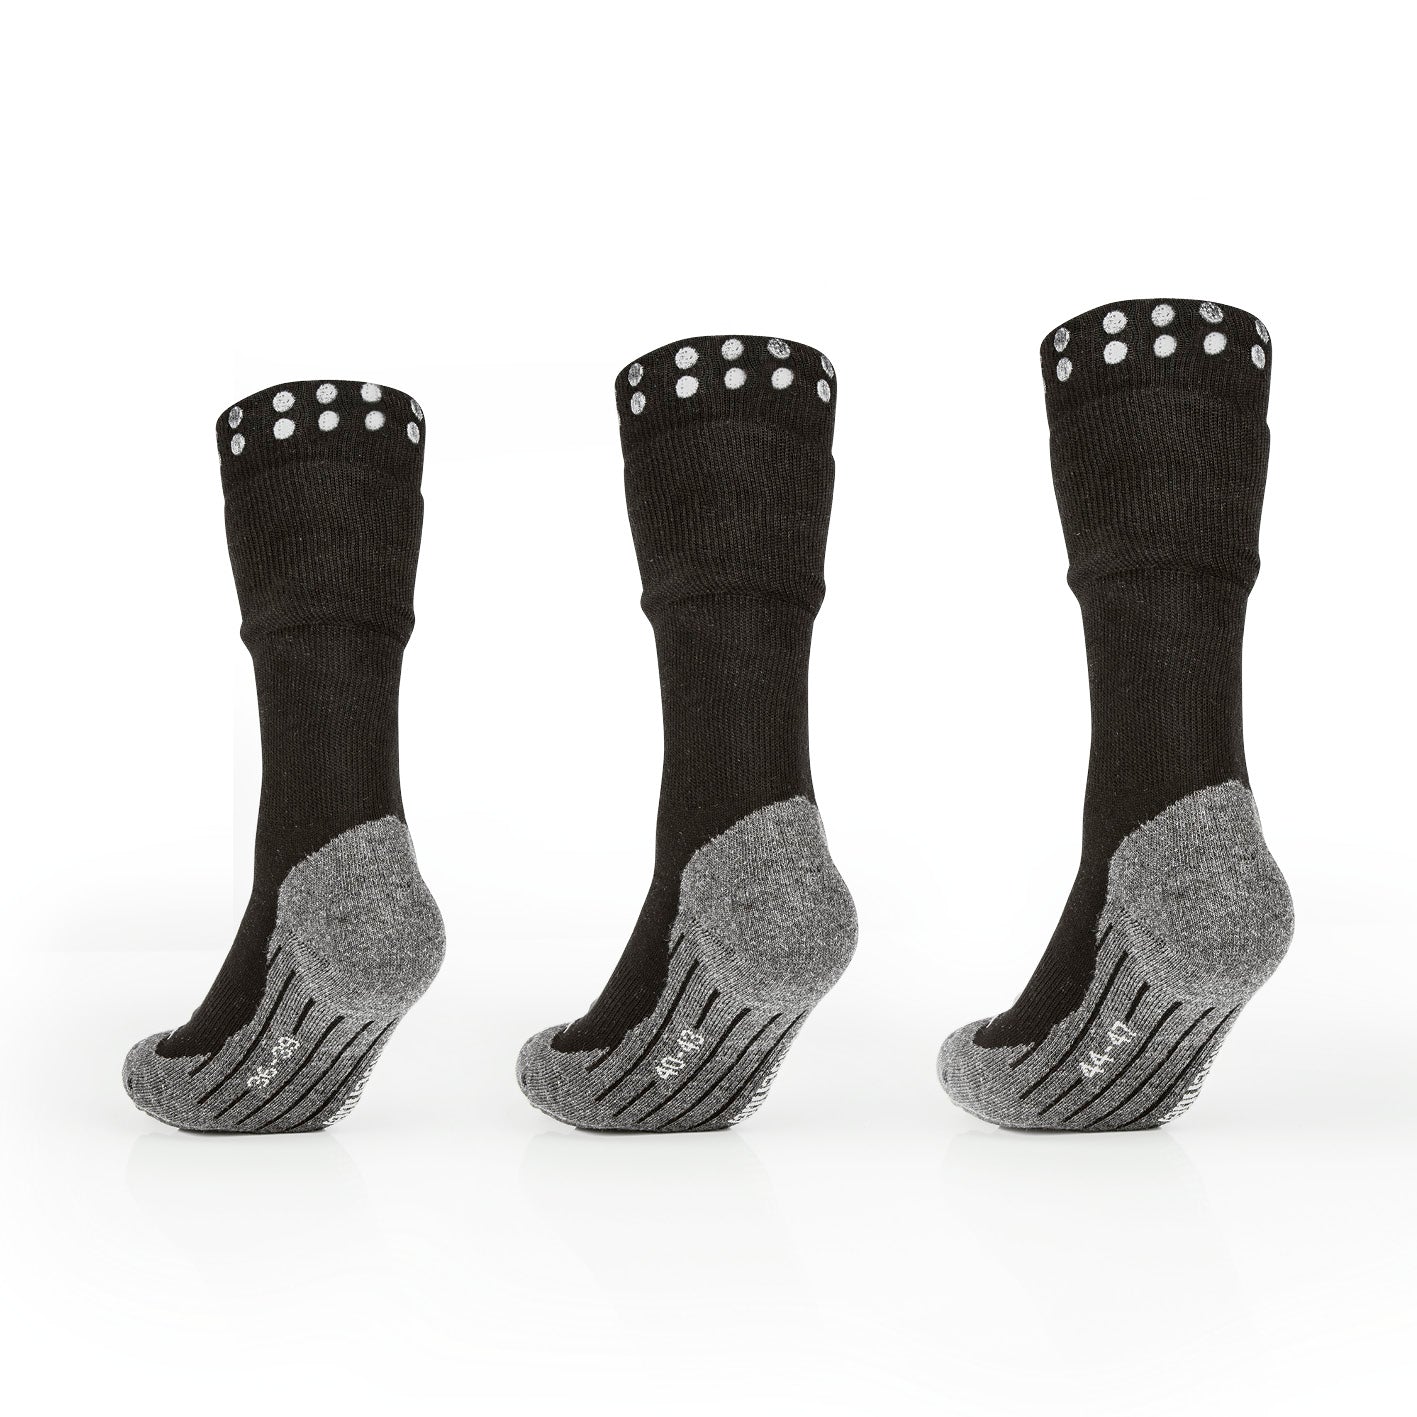 Funktions-Socke mit Doppelschaft - 2er-Set - Größe 44-47